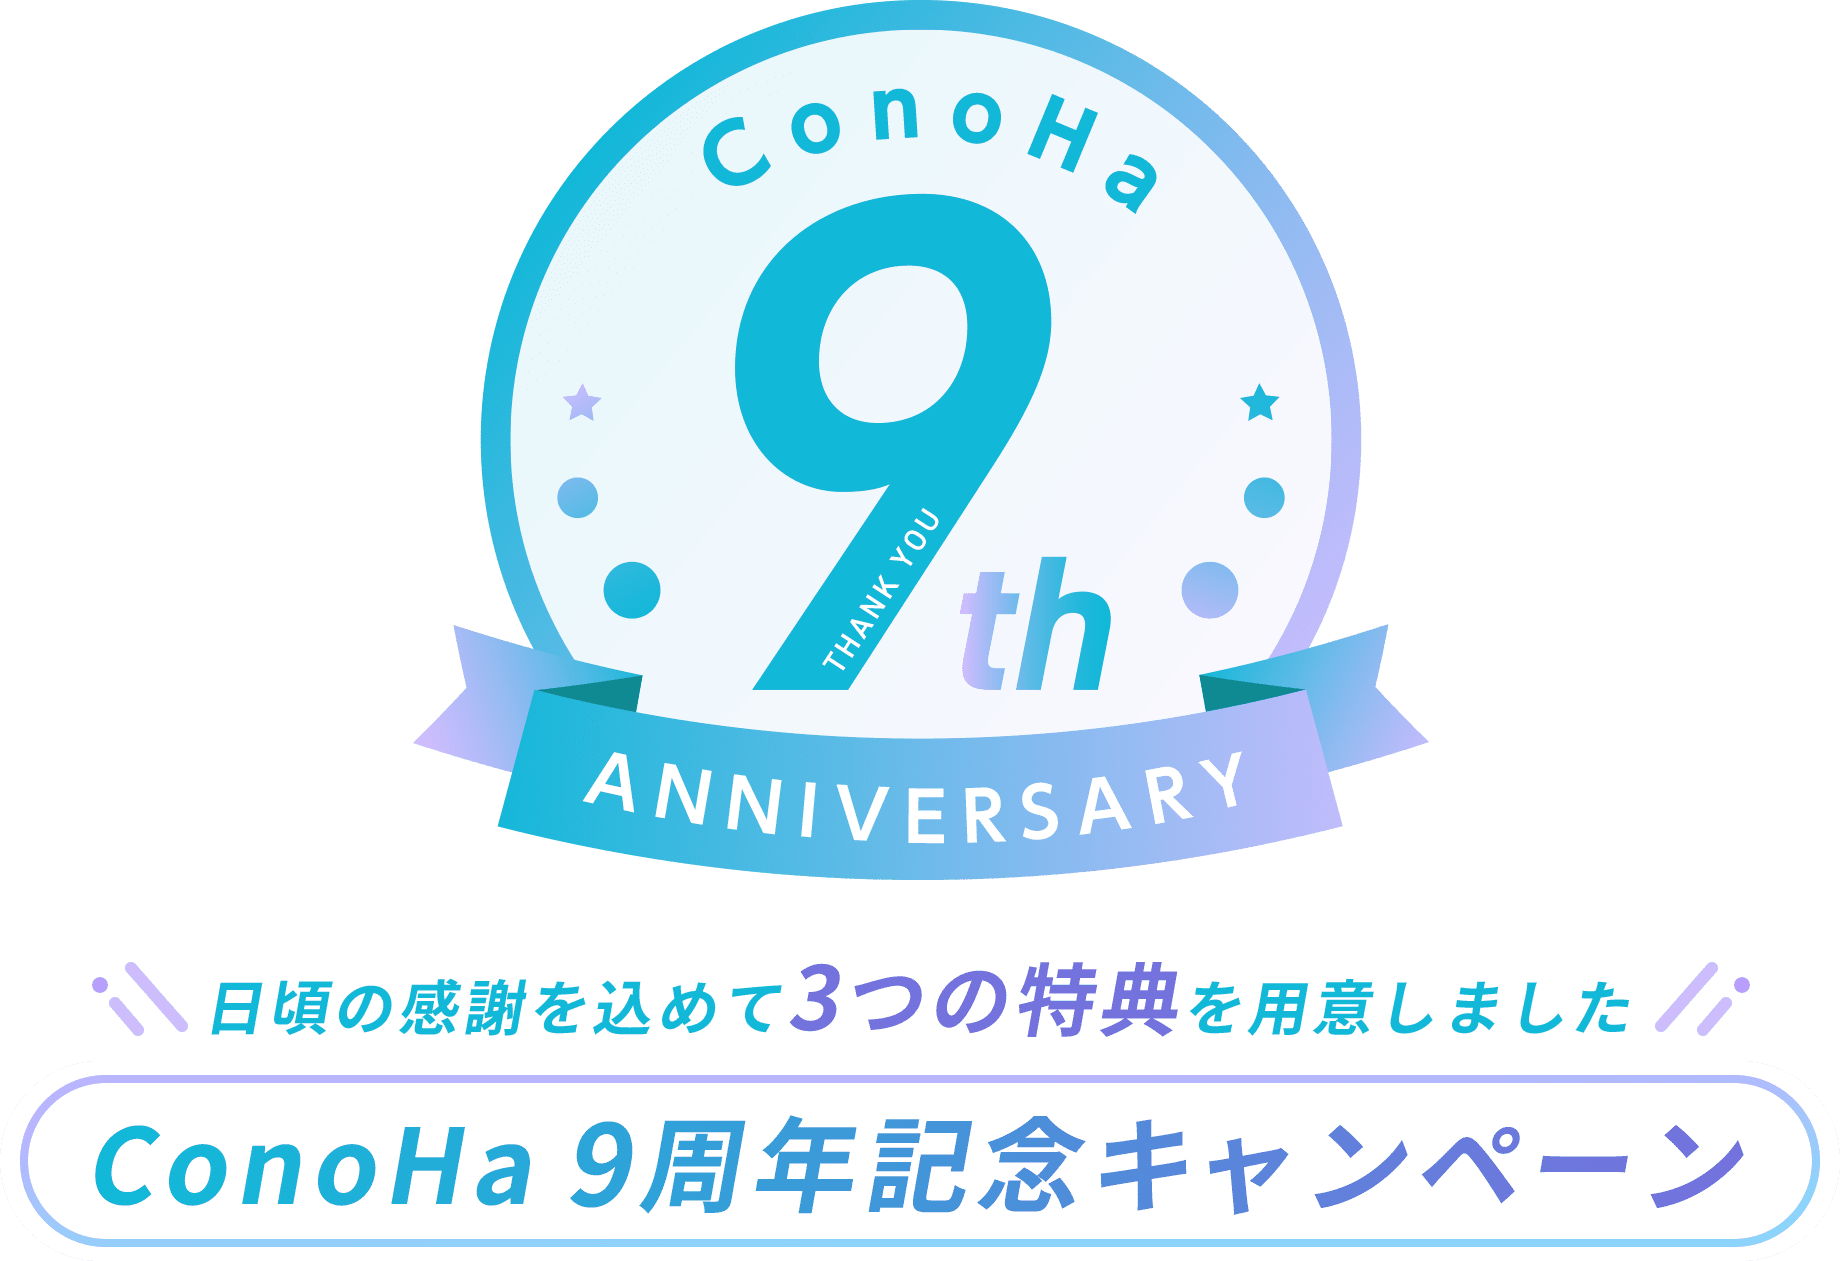 日頃の感謝を込めて3つの特典を用意しました ConoHa 9周年記念キャンペーン